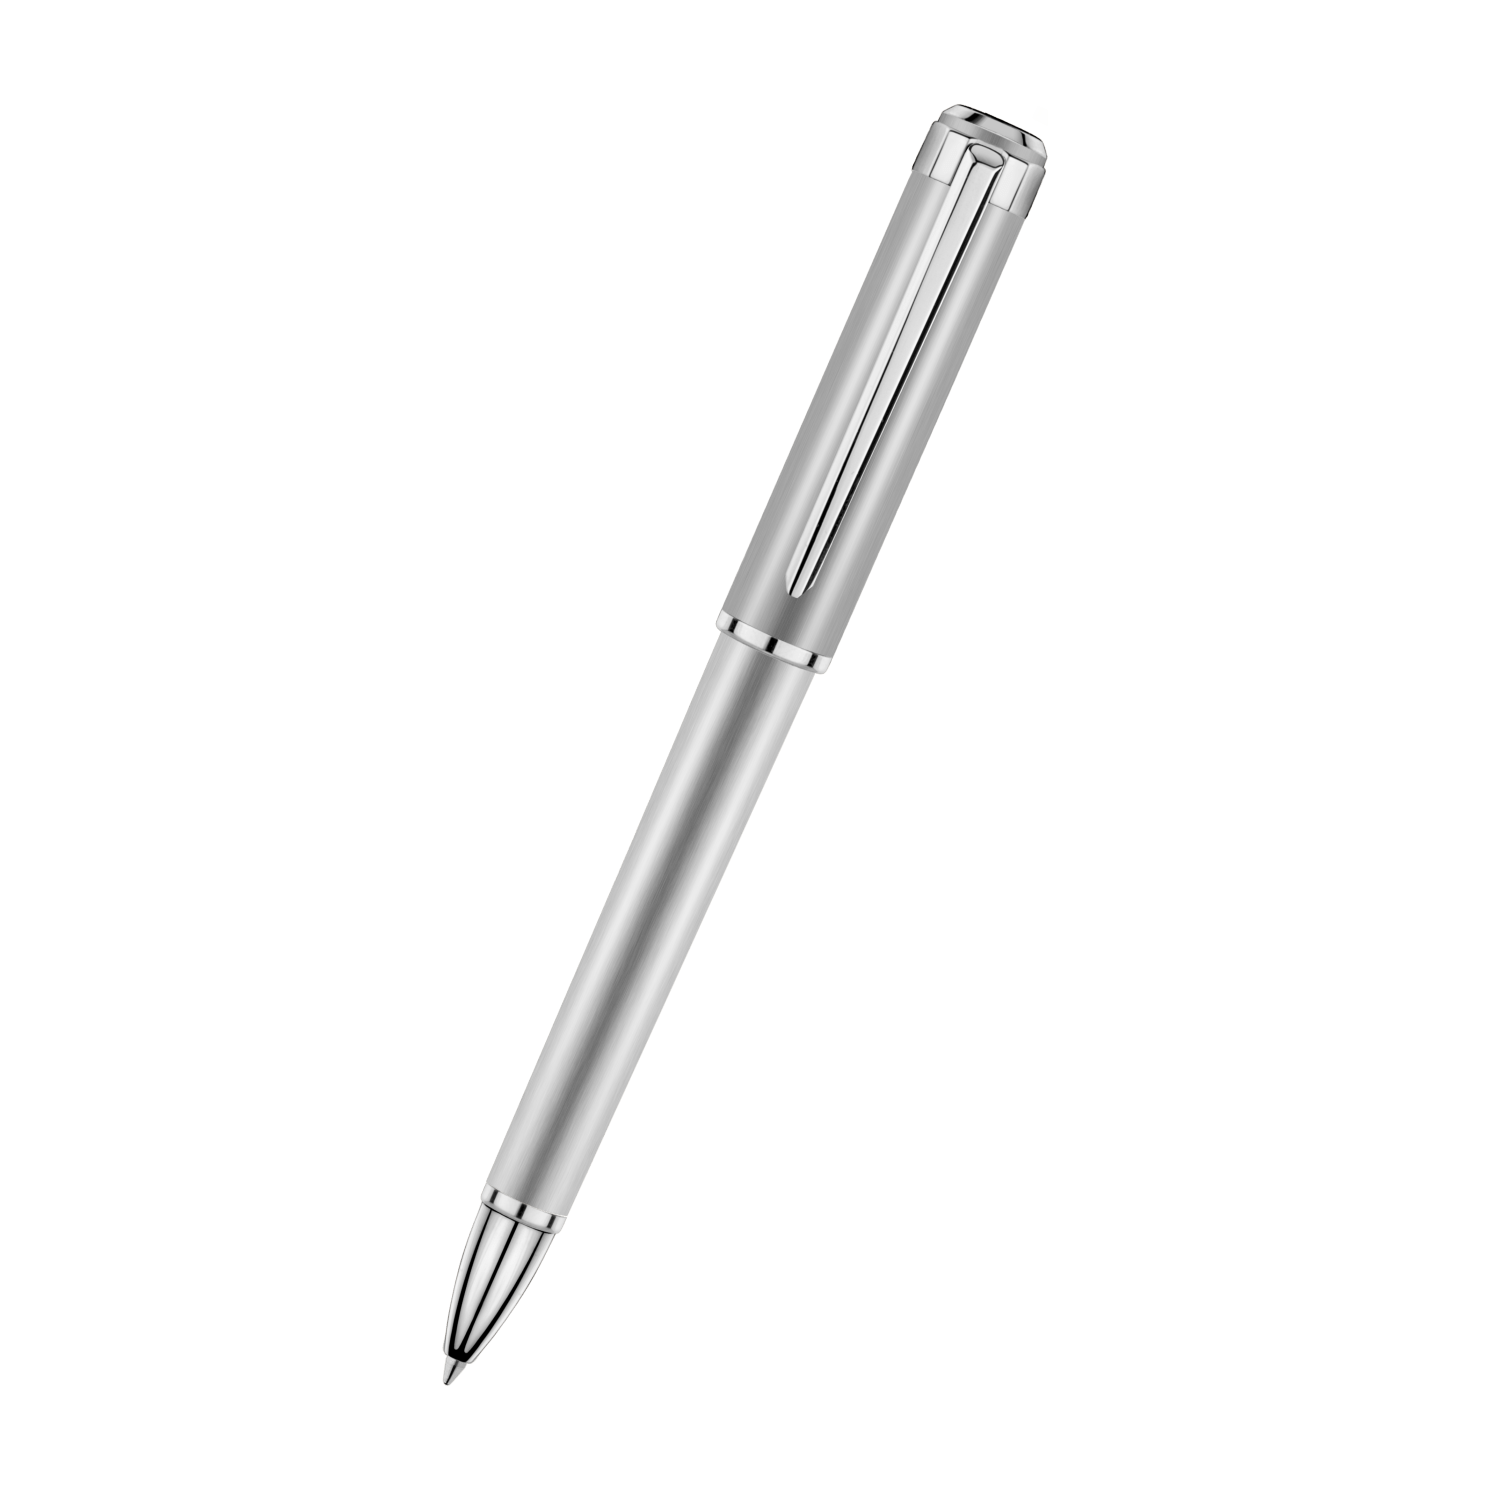 Шариковая ручка Alpine Eagle